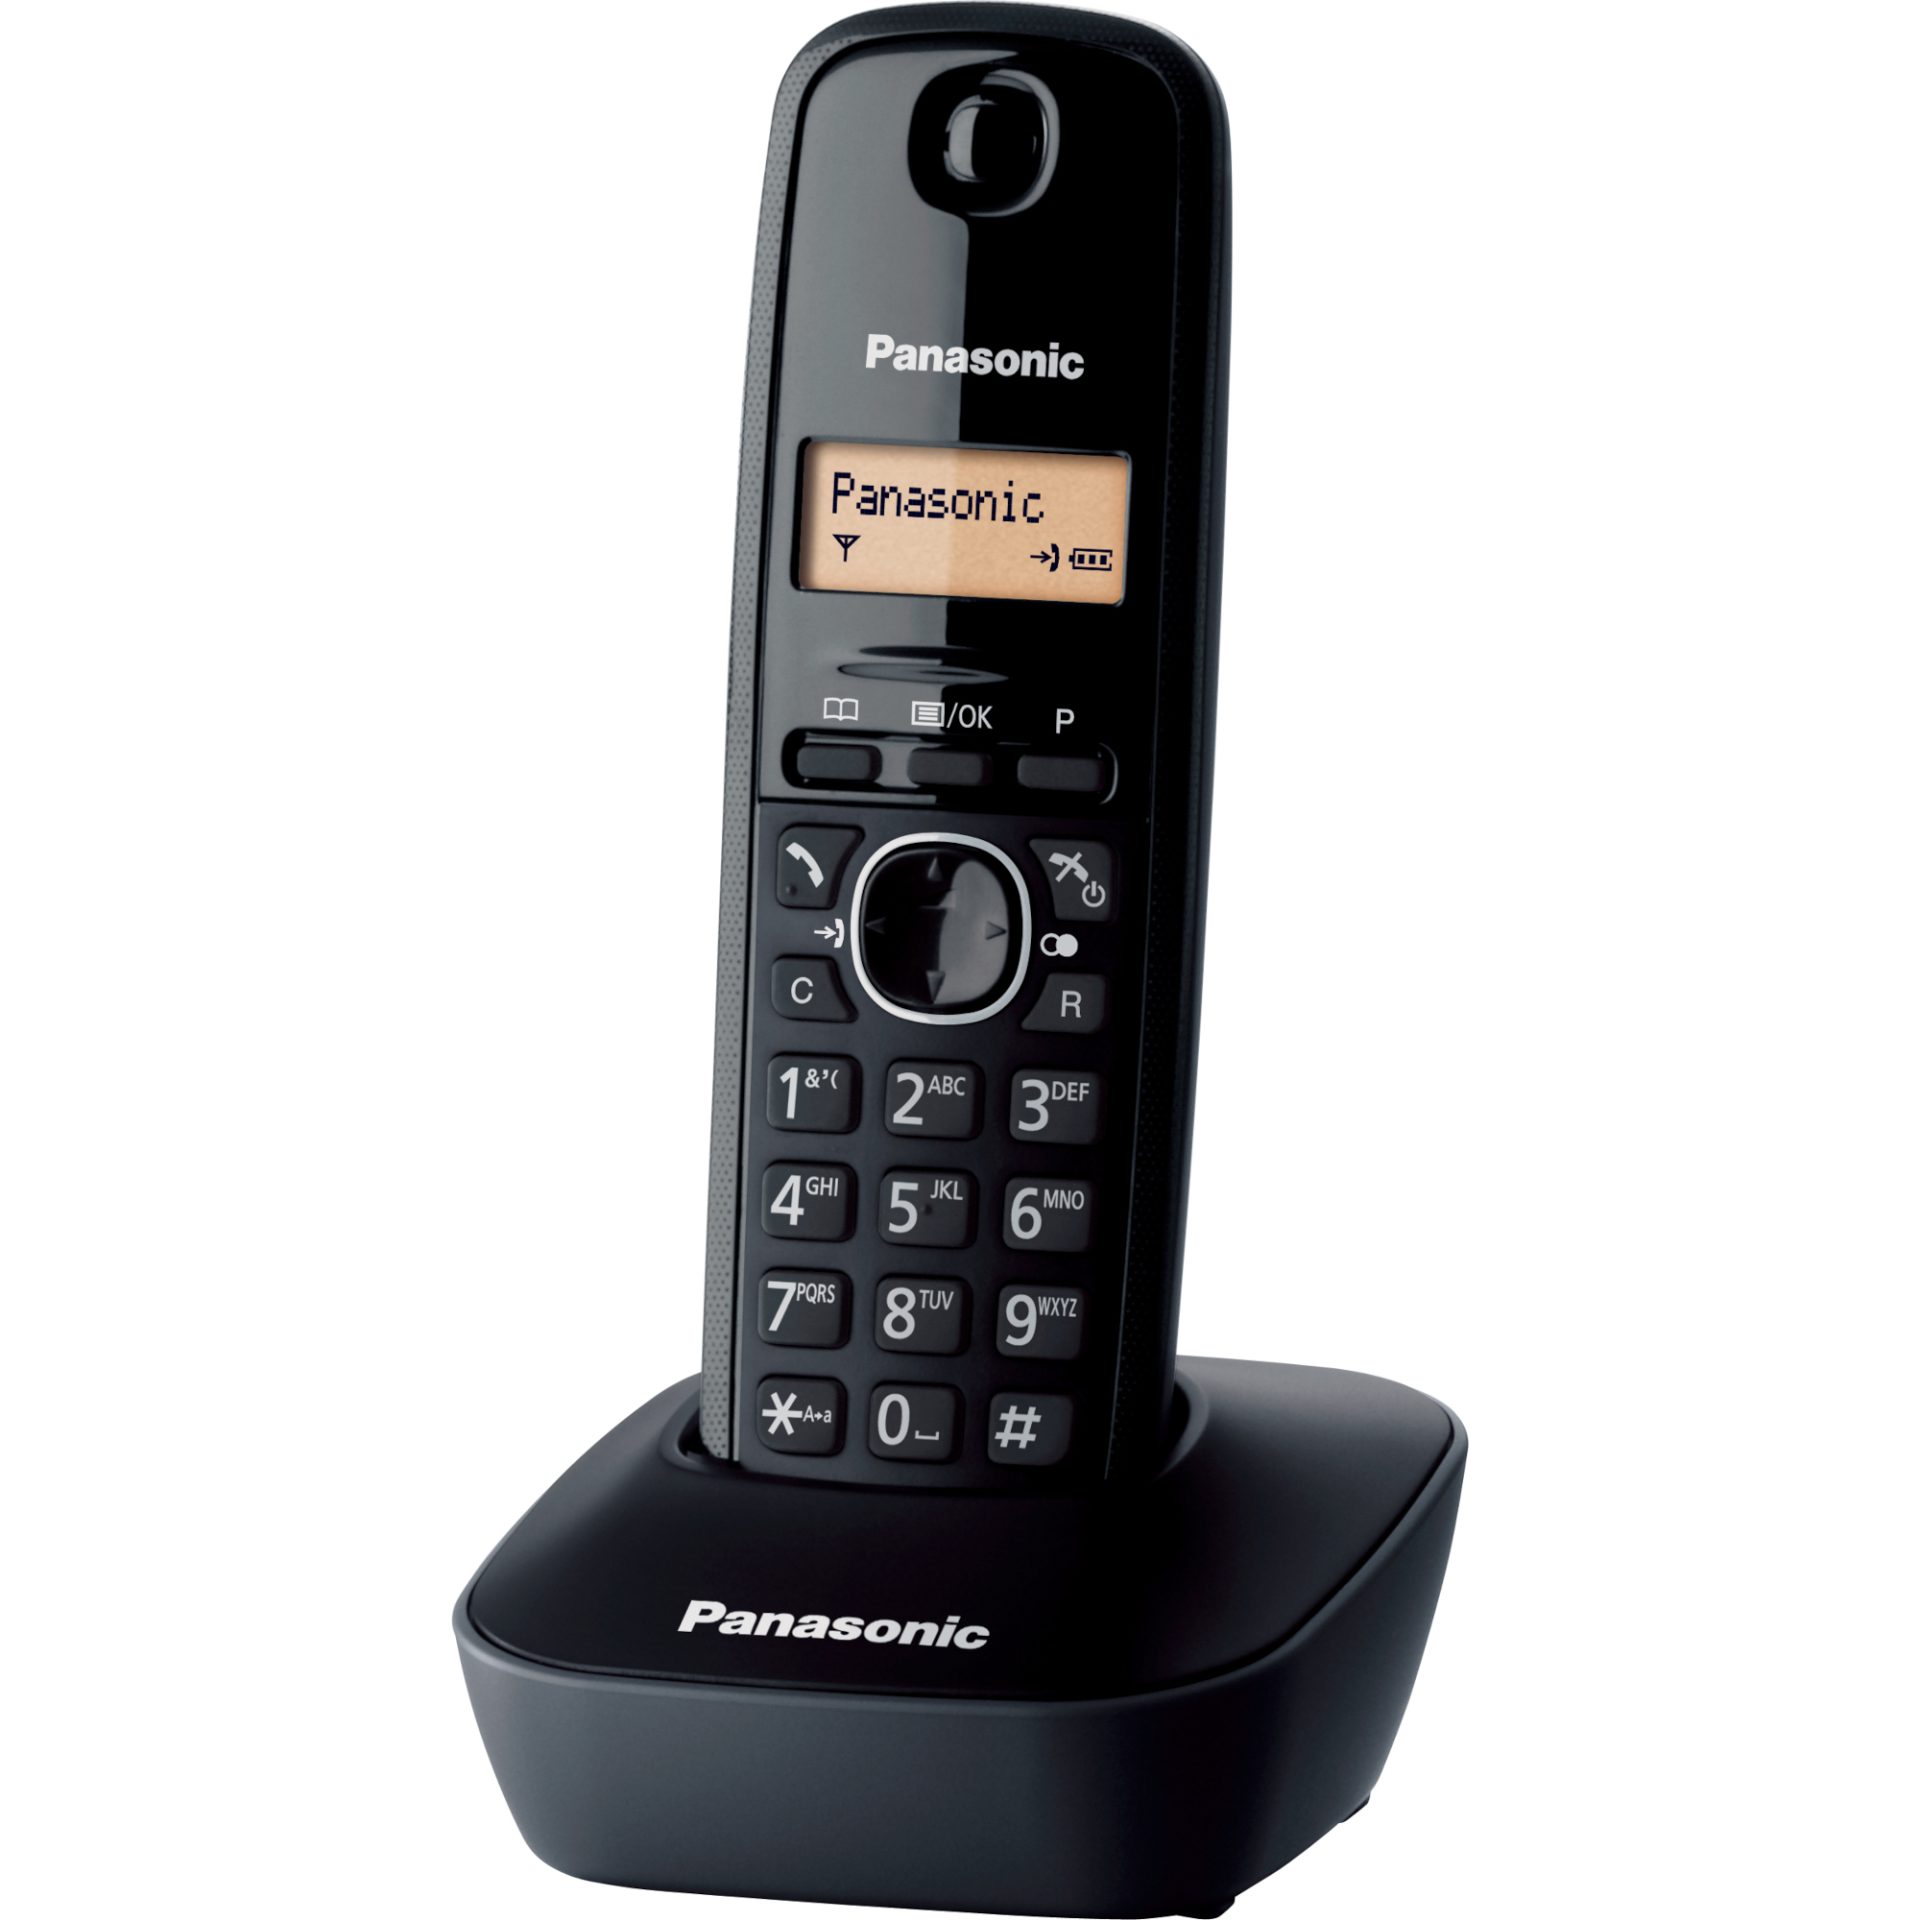 Panasonic KX-TG1611 DECT bezdrátový telefon (snadné použití, telefonní seznam 50 položek, podsvícený LCD displej, hodiny, budík), černý